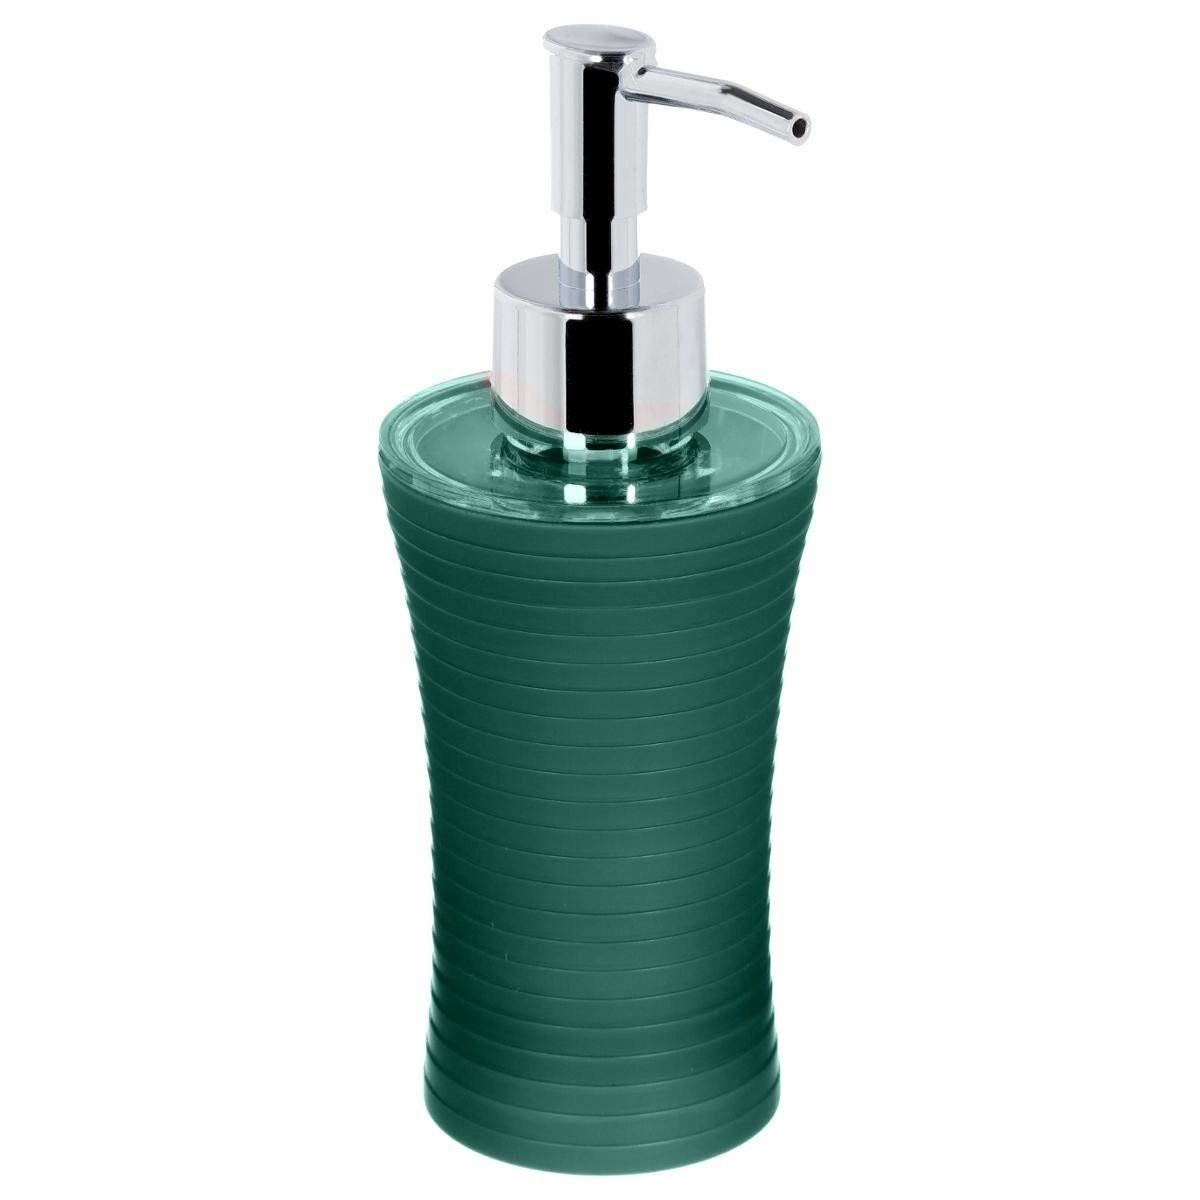 5five Simple Smart Dávkovač tekutého mýdla gel s čerpadlem, barva zelená - EMAKO.CZ s.r.o.